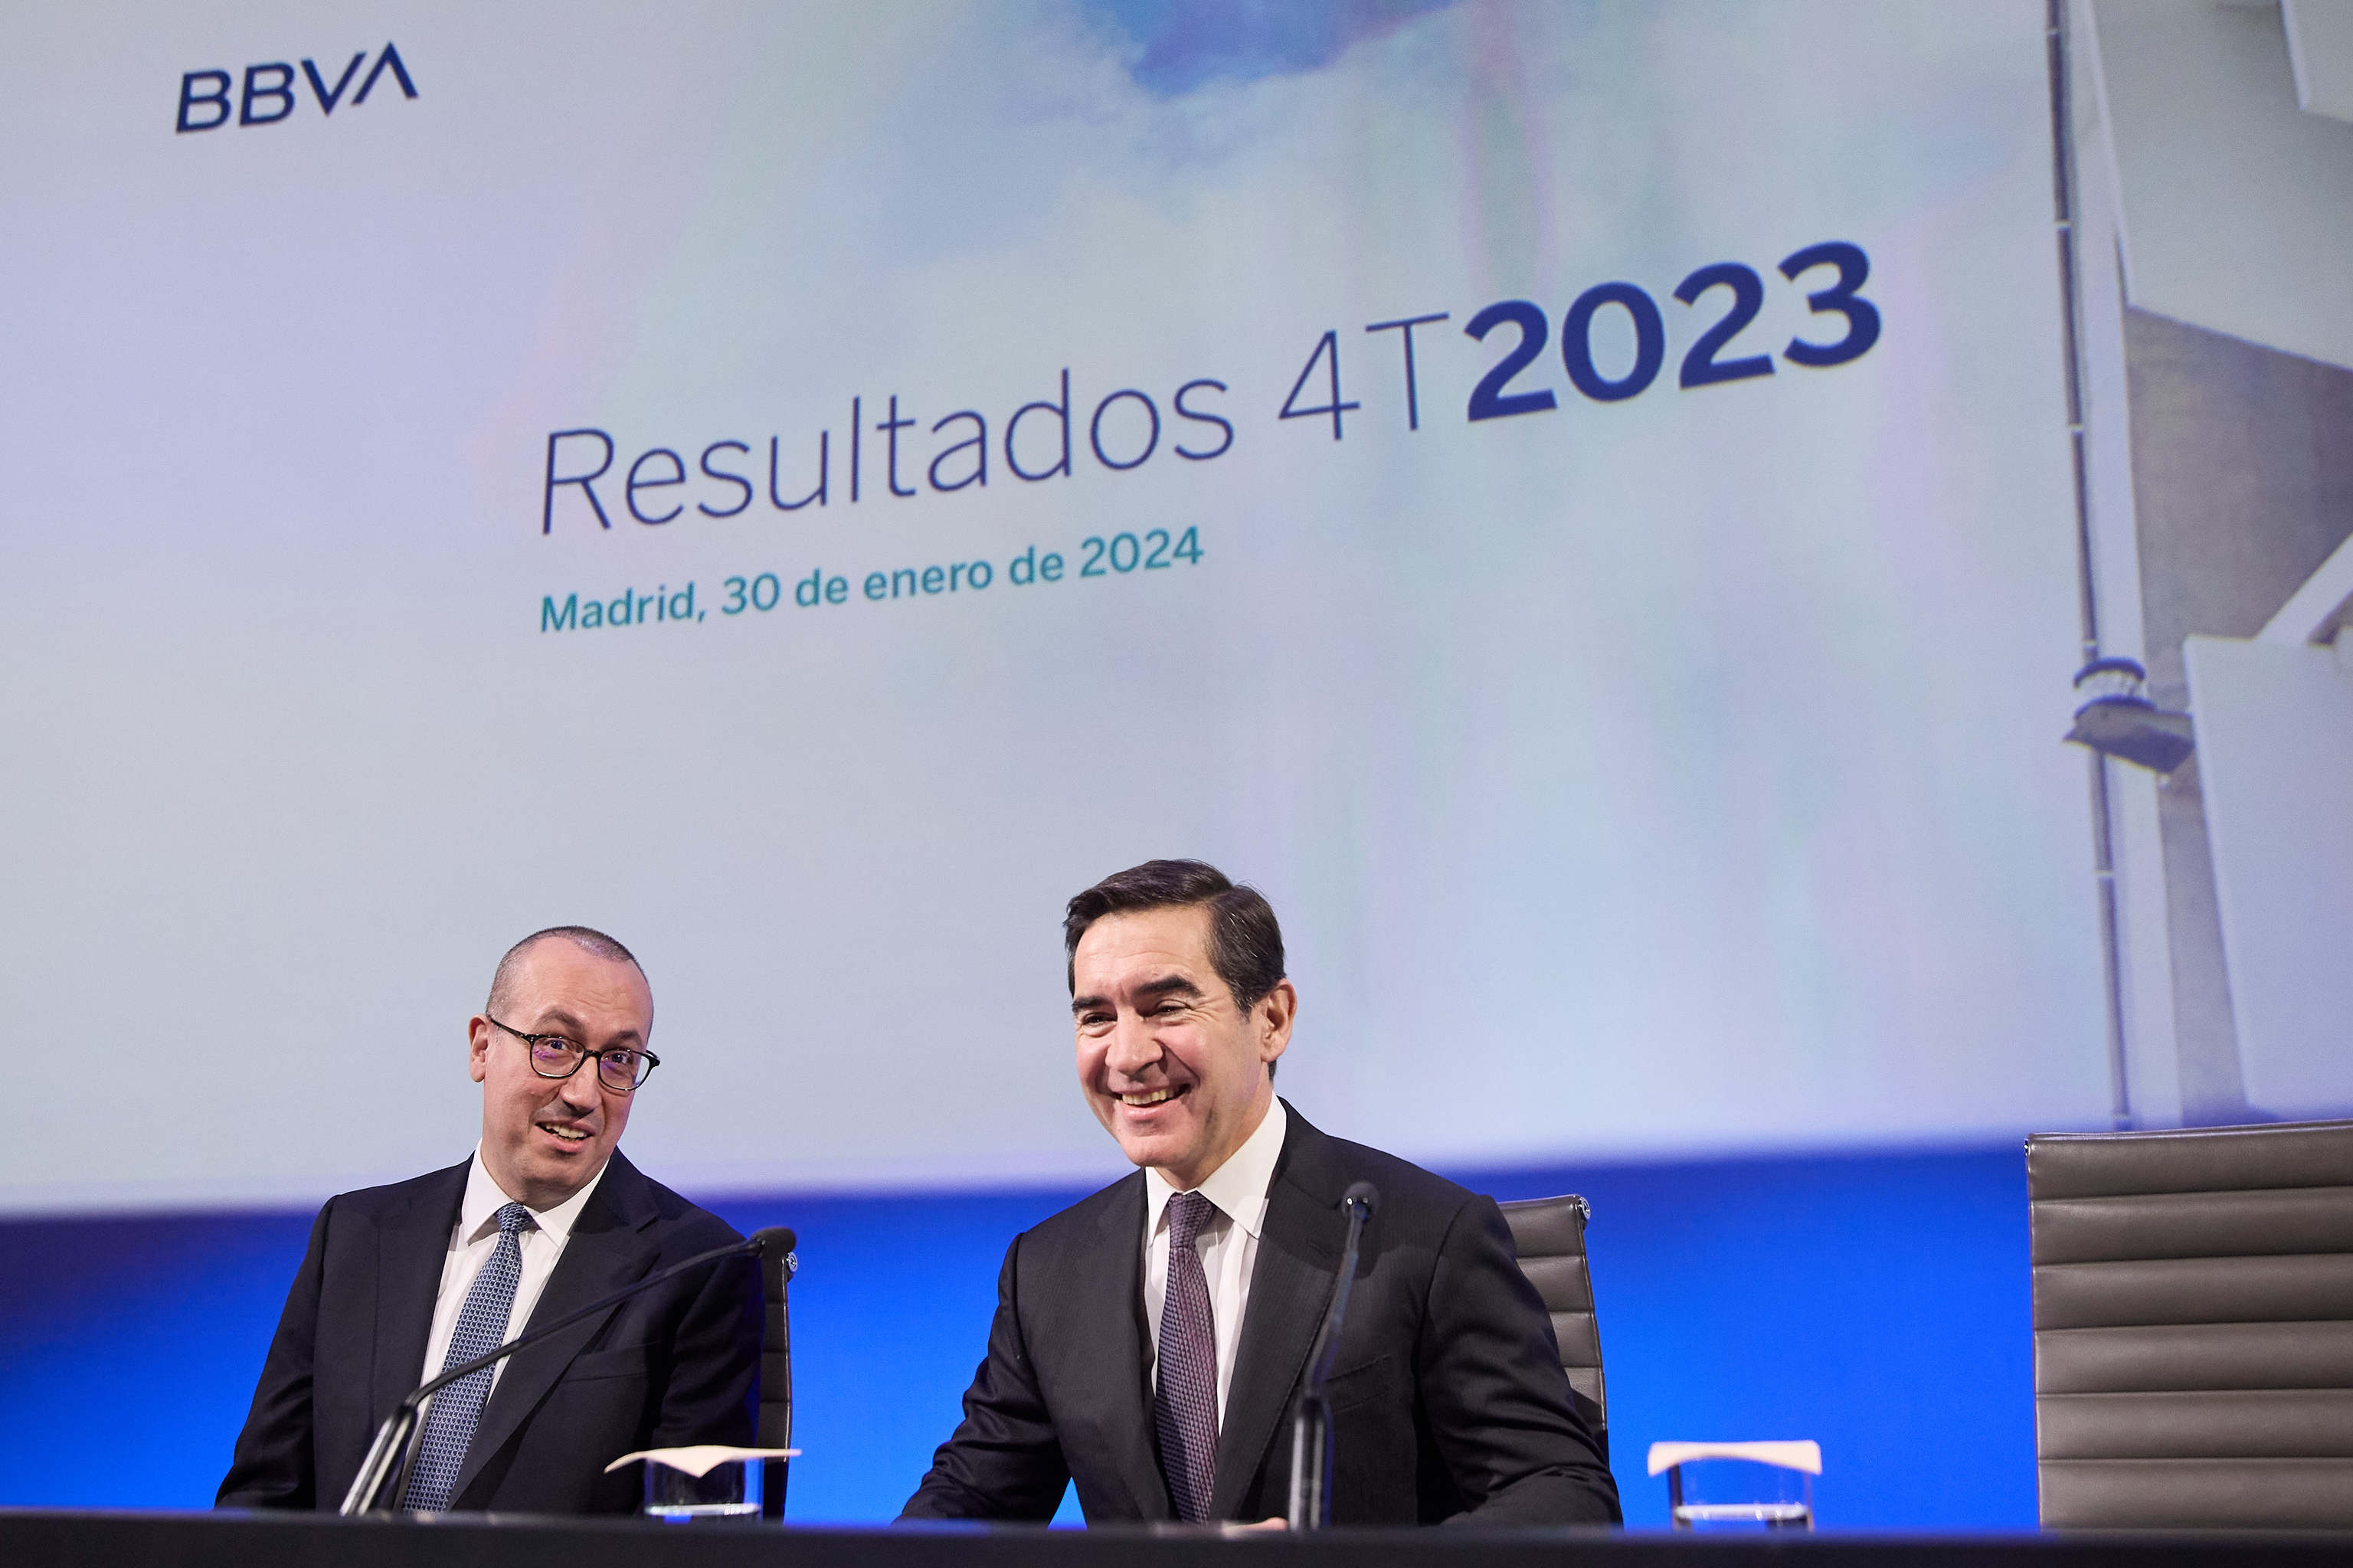 Onur Genç, CEO de BBVA, y Carlos Torres, presidente, este martes en Madrid.